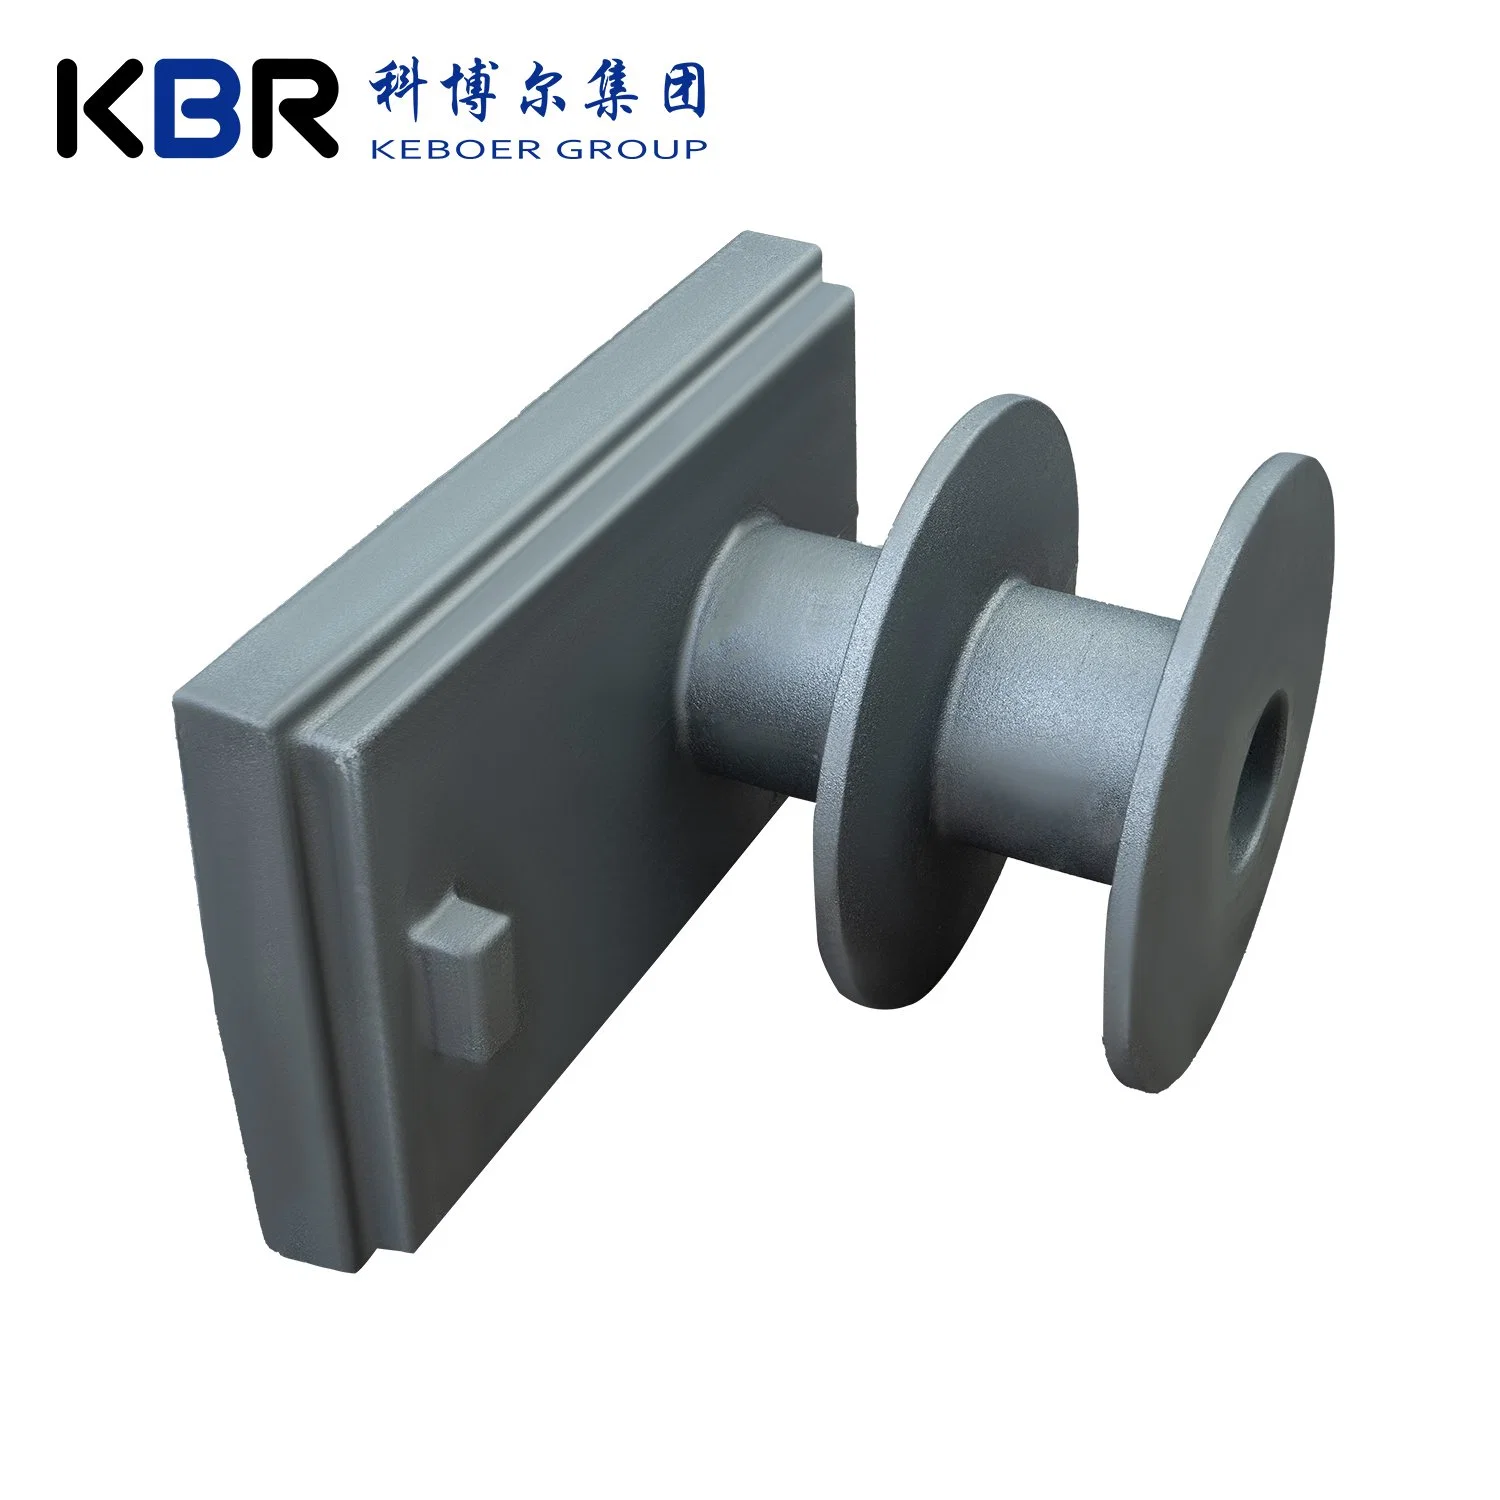 La Chine de la fonderie de fer gris gris métal //fonte de fer/planche/fer en fonte ductile/ de moulage en coquille